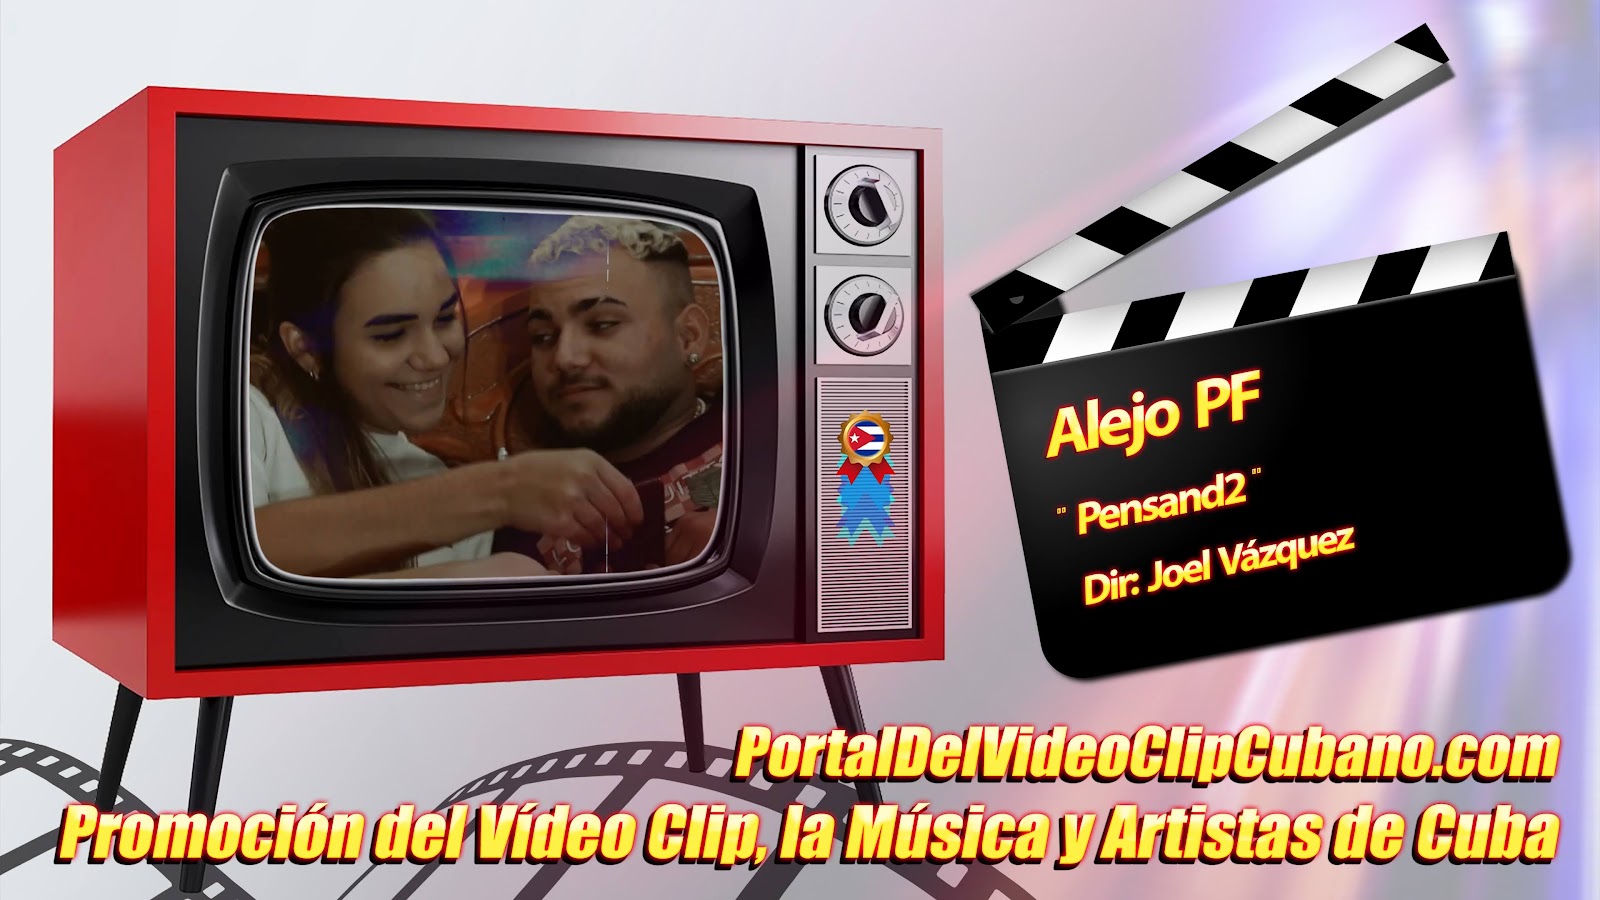 Alejo PF - ¨Pensand2¨ - Director: Joel Vázquez - EGOclip. Portal Del Vídeo Clip Cubano. Música Urbana Cubana. Canción. CUBA.